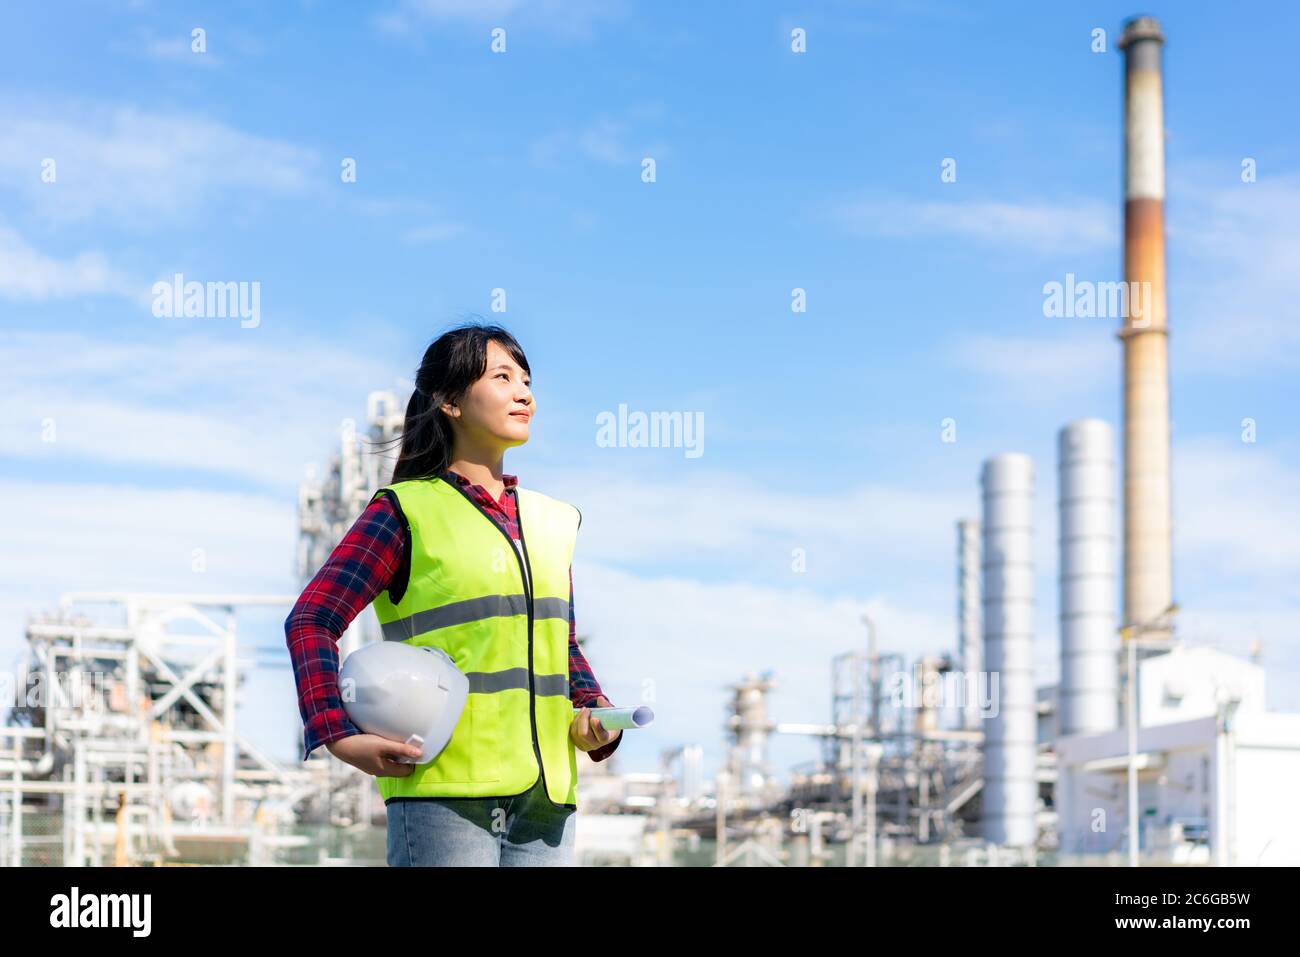 Asiatische Frau Ingenieur mit einem weißen Schutzhelm und Blaupause freuen sich auf die Zukunft mit Ölraffinerie Fabrik im Hintergrund. Stockfoto